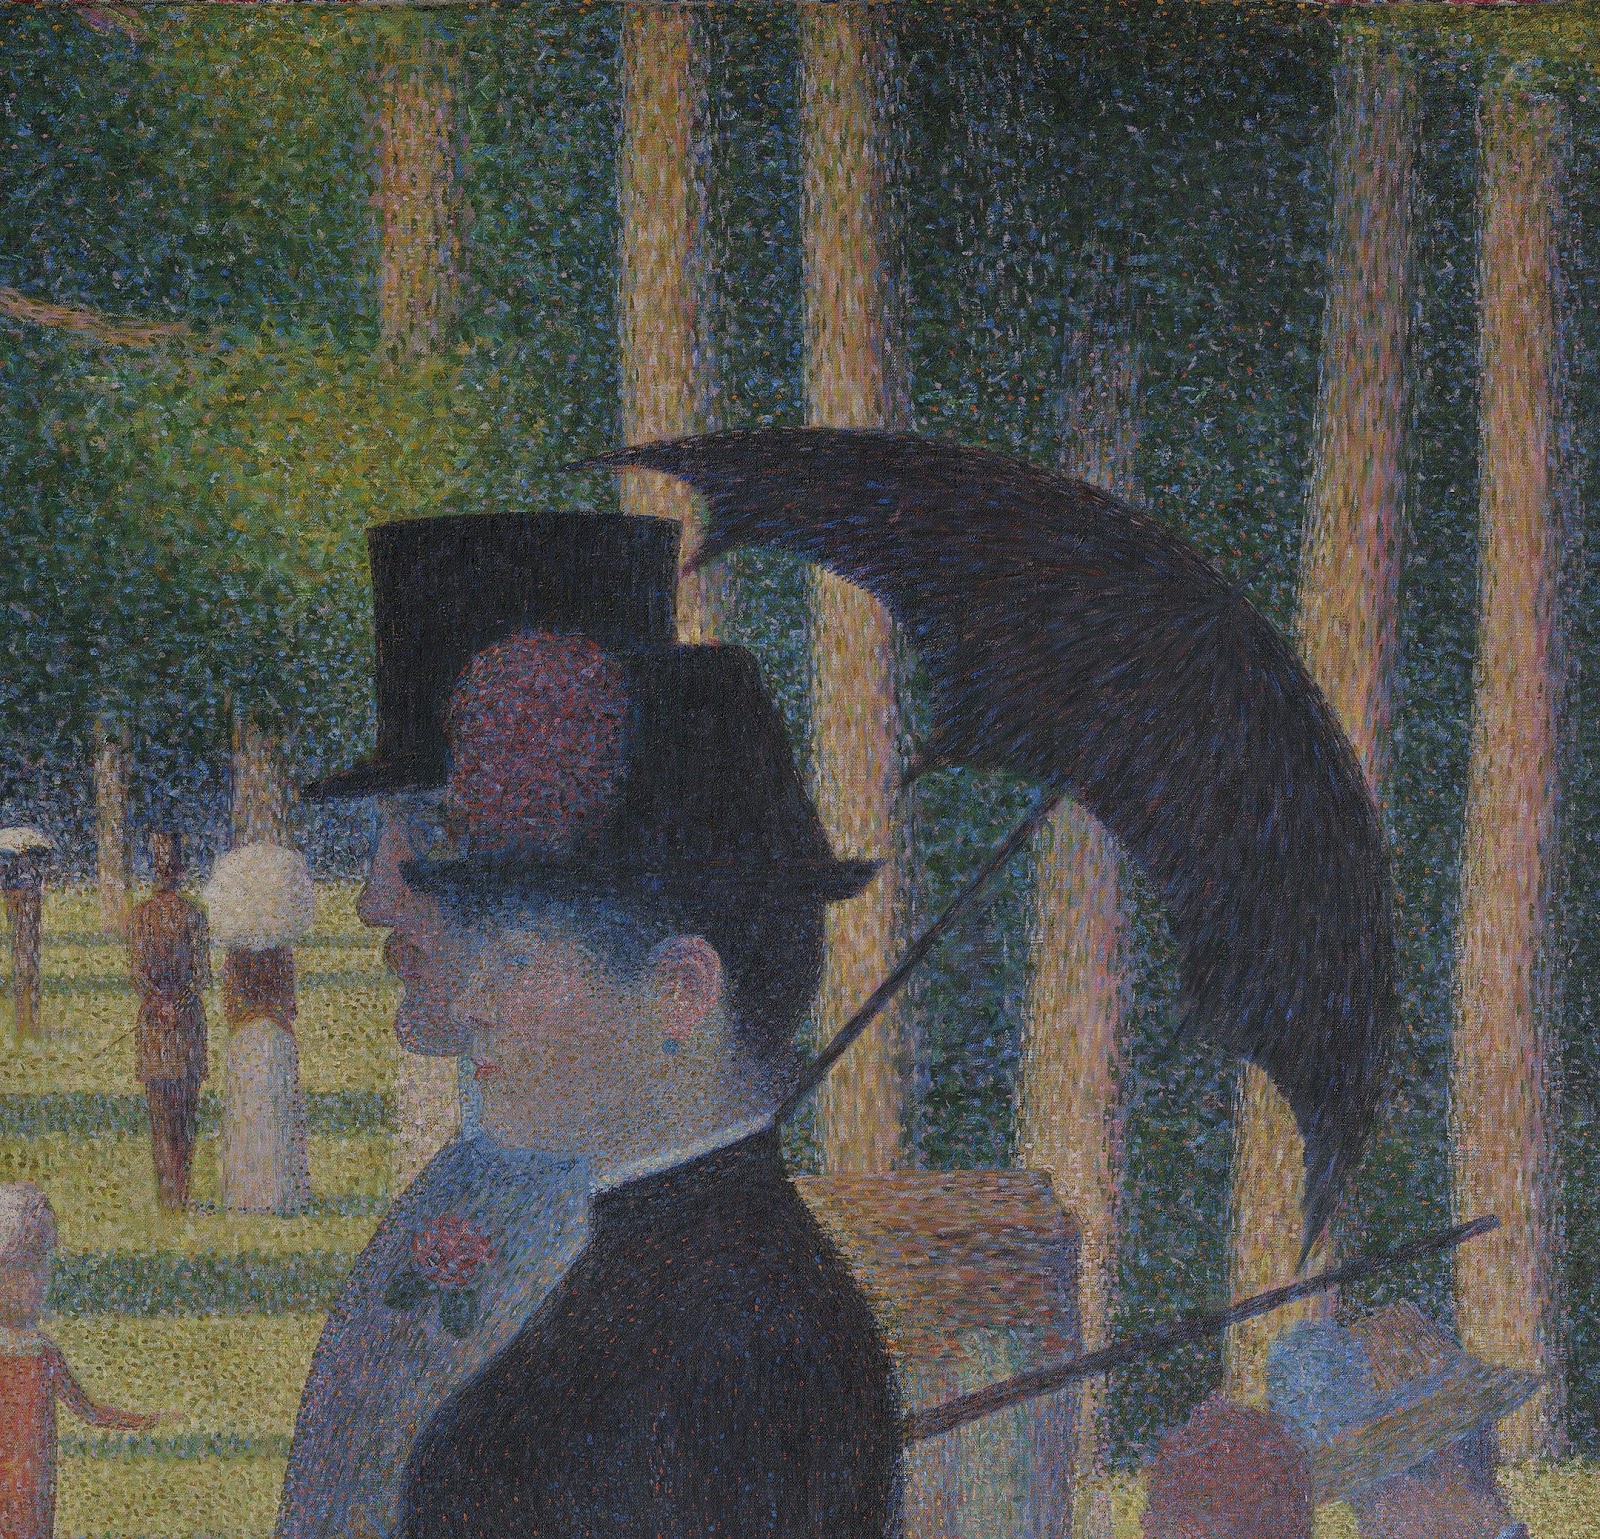 Georges+Seurat-1859-1891 (13).jpg